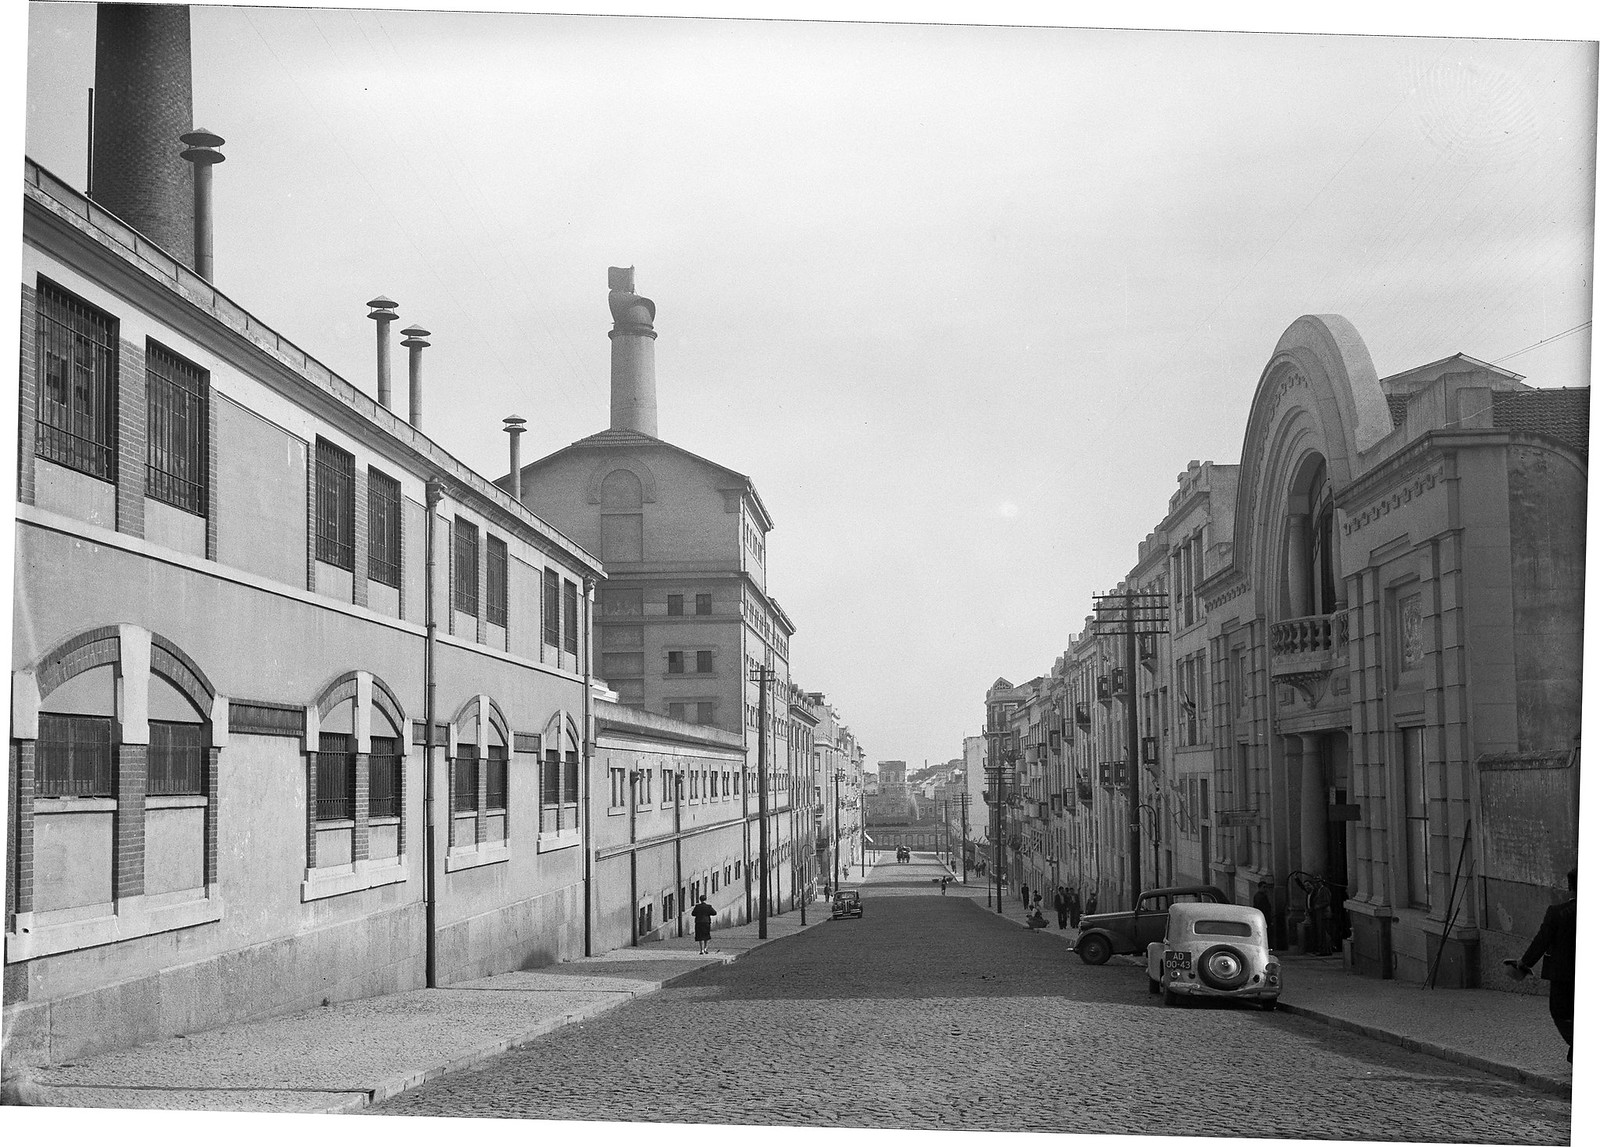 Sociedade Central de Cervejas e garagem Tomarense na R. Ant.º Pedro, Lisboa  (H. Novais, c. 1940)